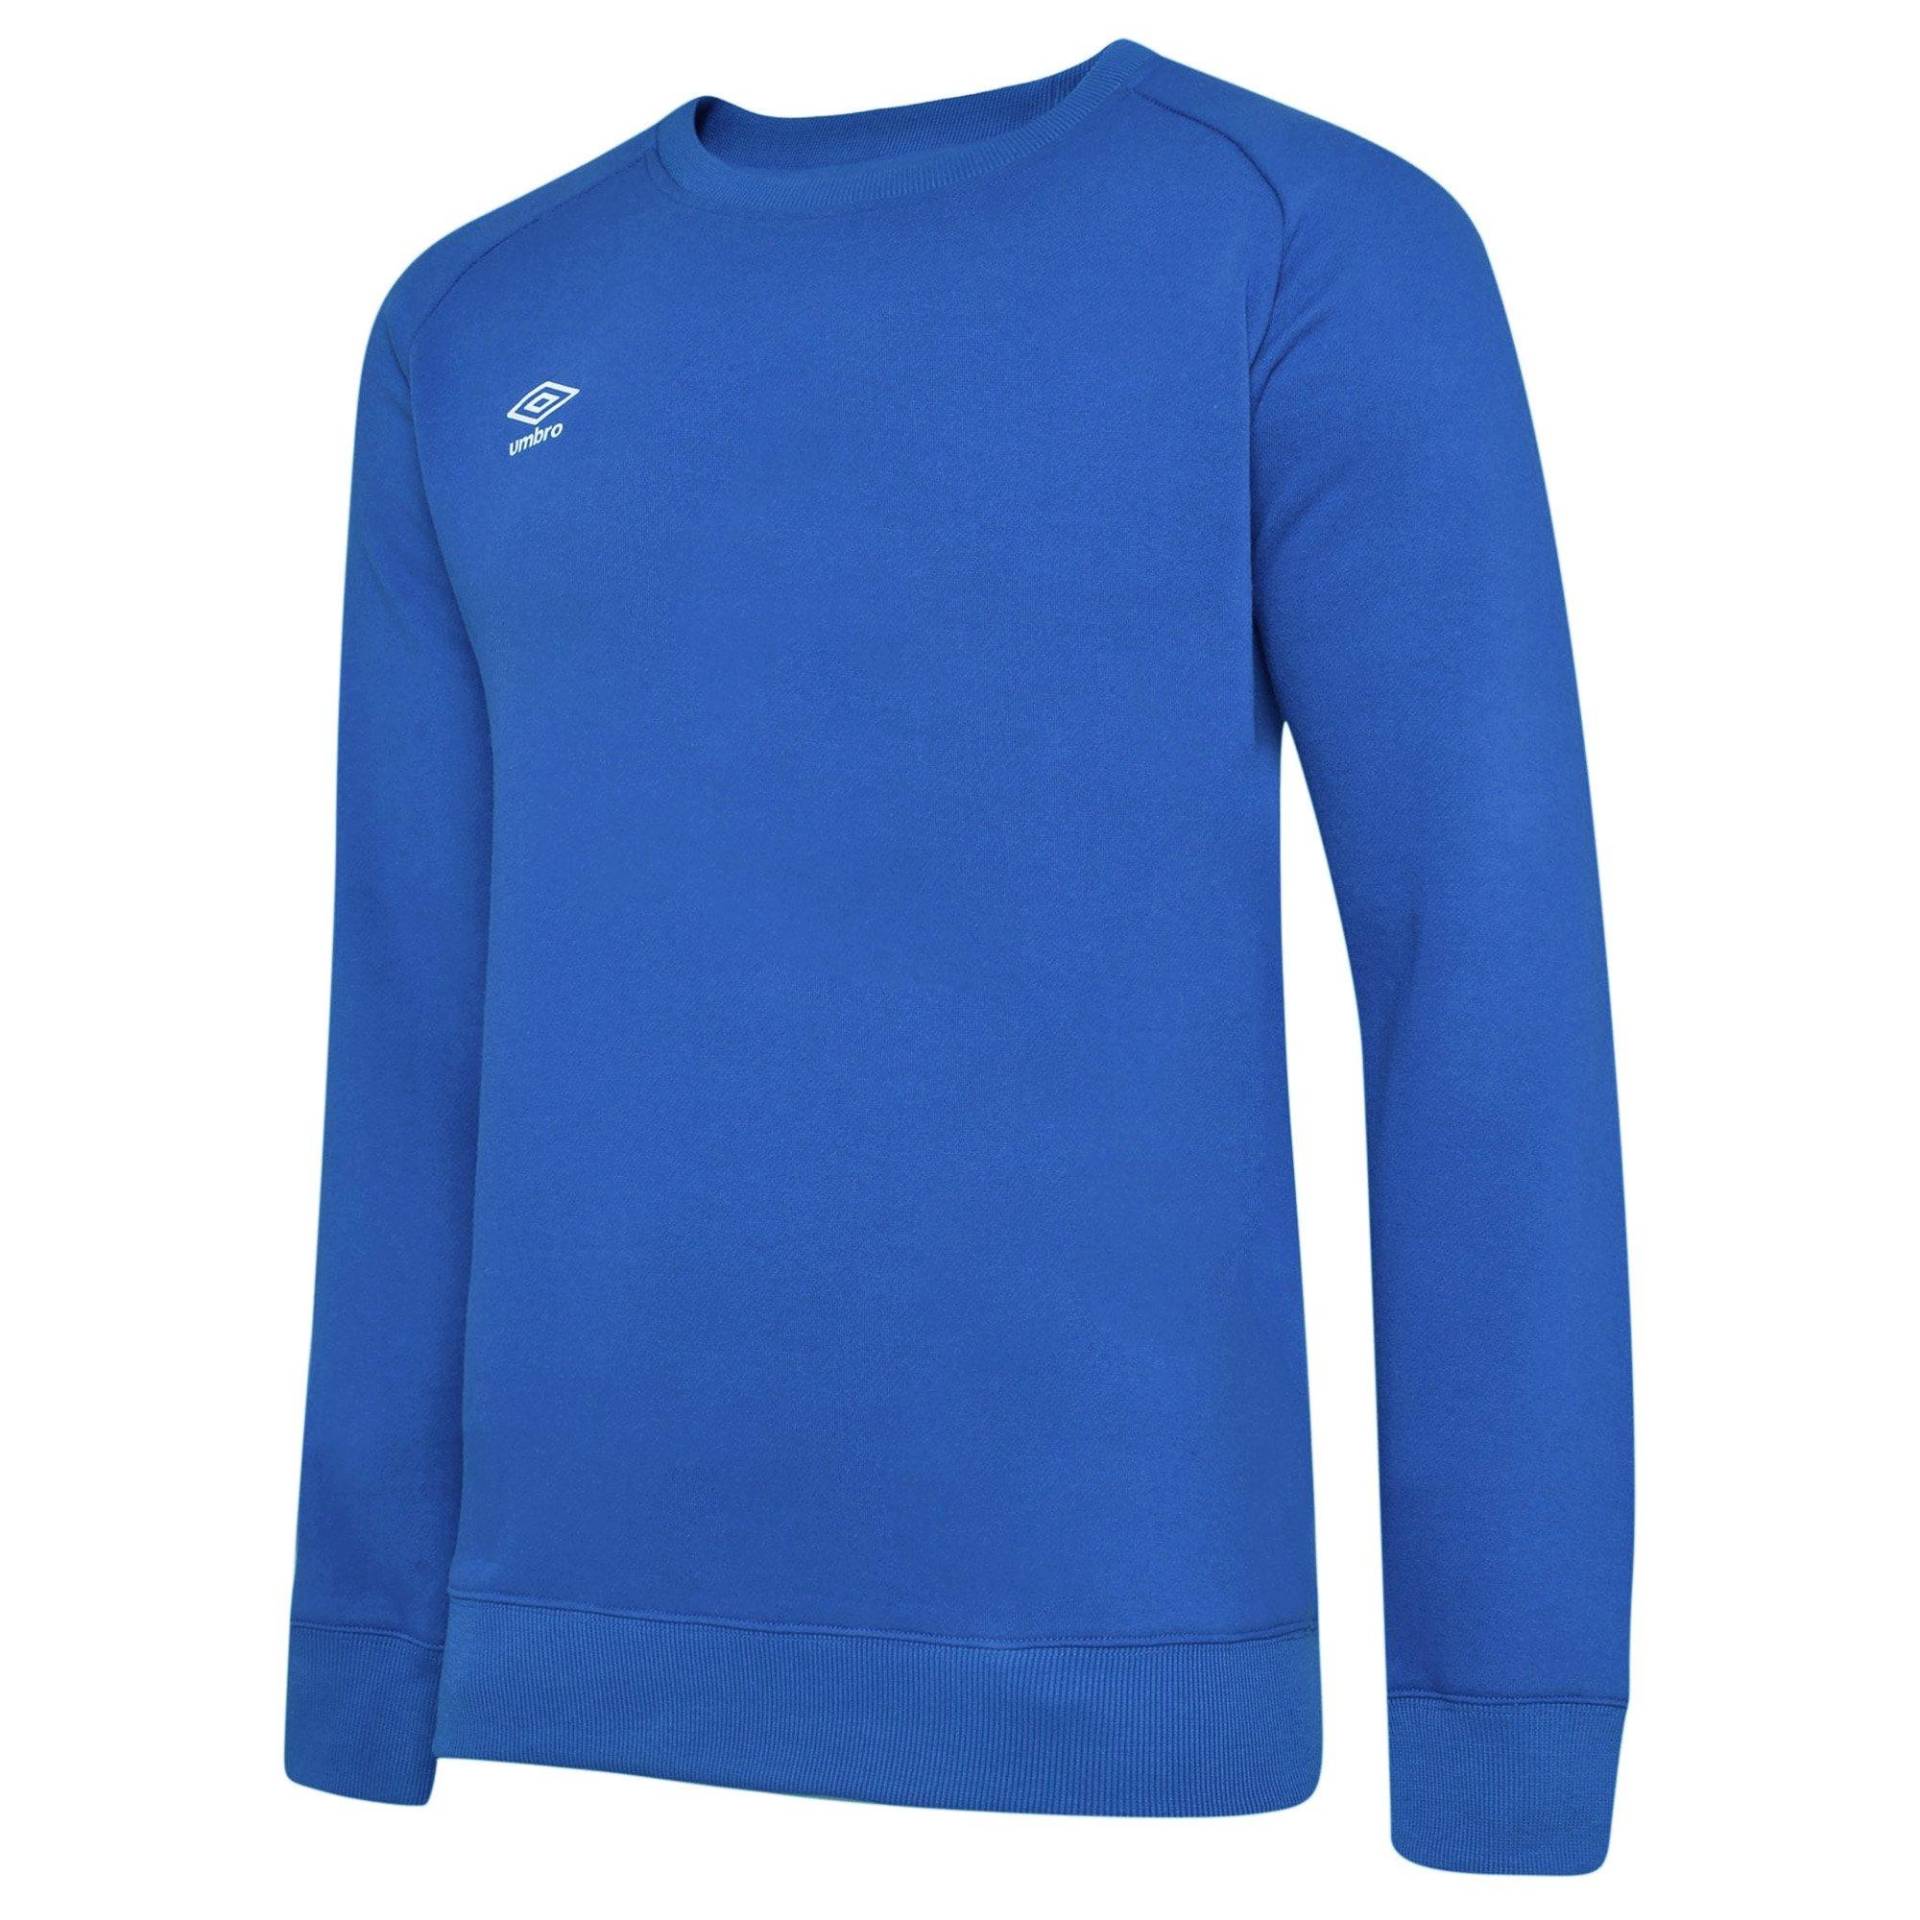 Club Leisure Sweatshirt Damen Blau XS von Umbro